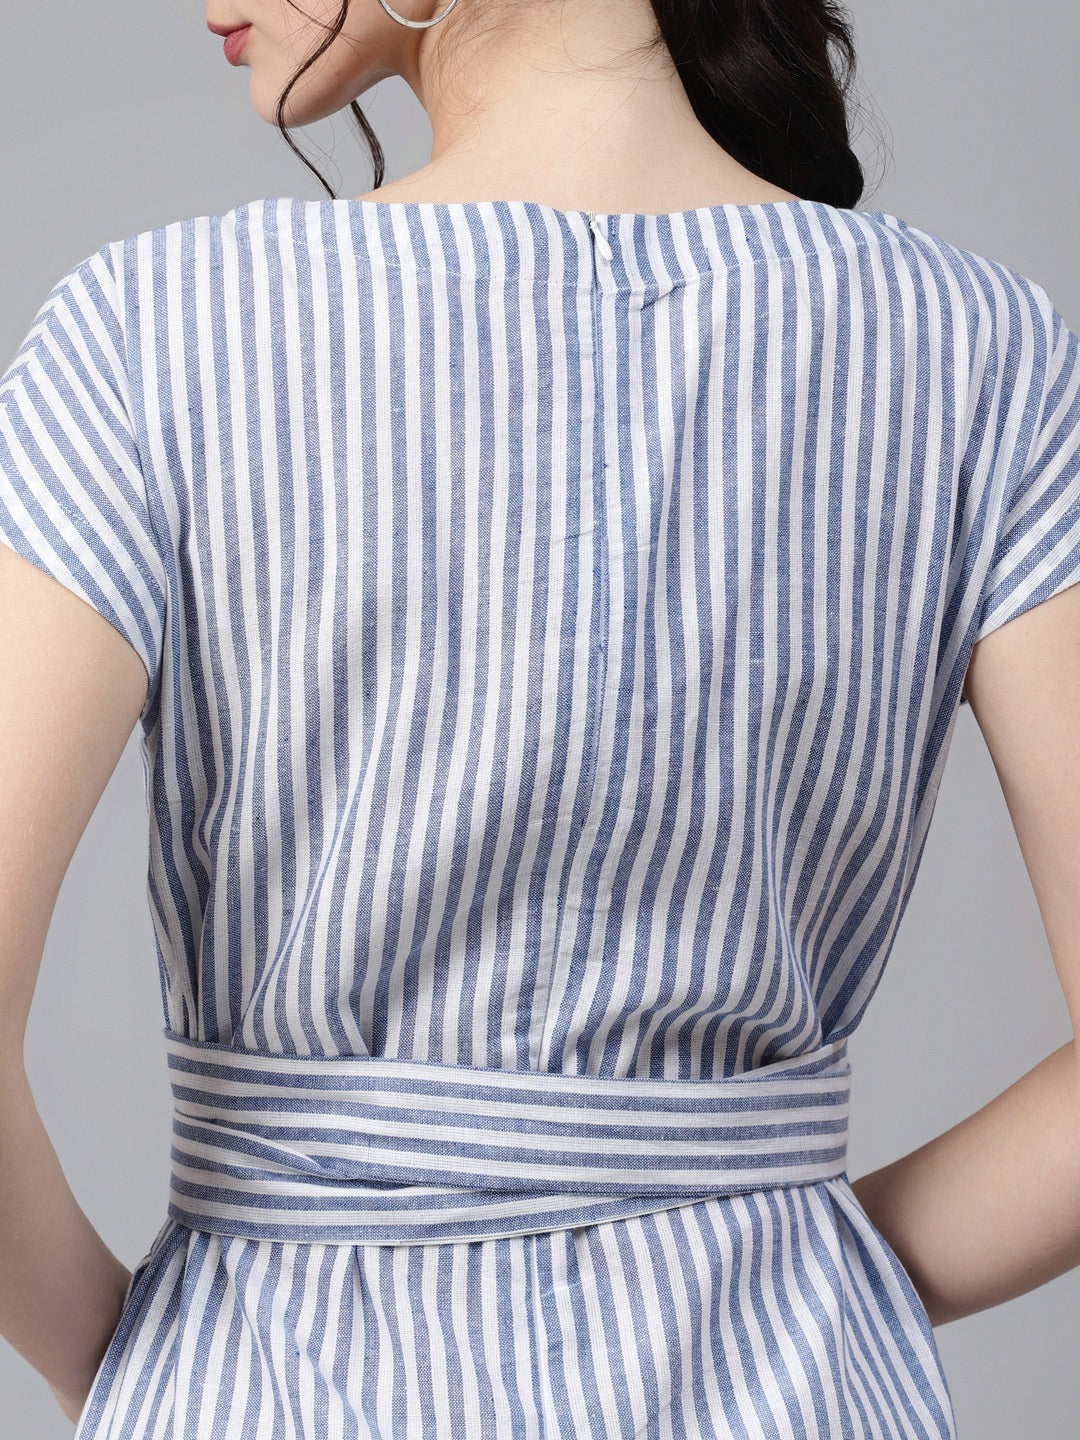 Cottinfab Blue & White Striped Cotton Culotte Jumpsuit with Belt